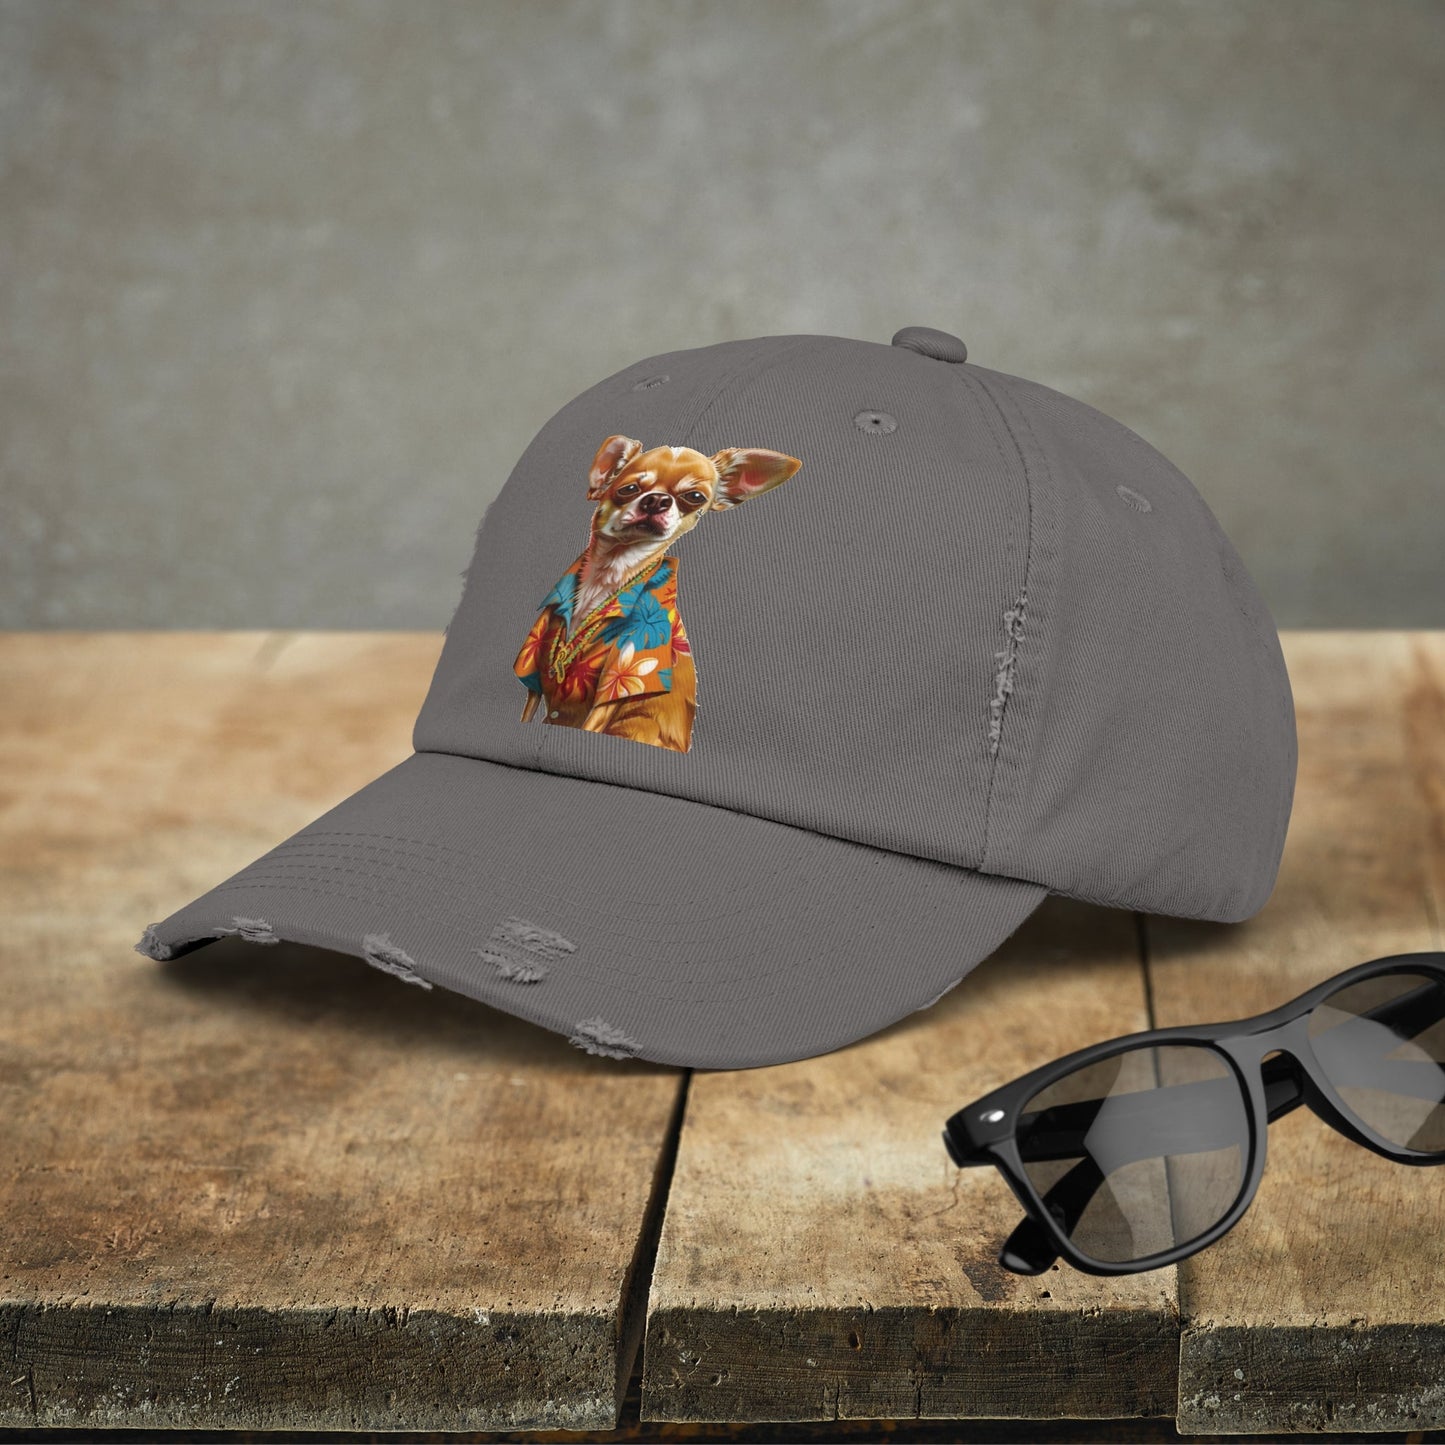 Hawaiian Chihuahua Dog Hat, Baseball Cap, Dog Art Adjustable Cotton Twill - FlooredByArt